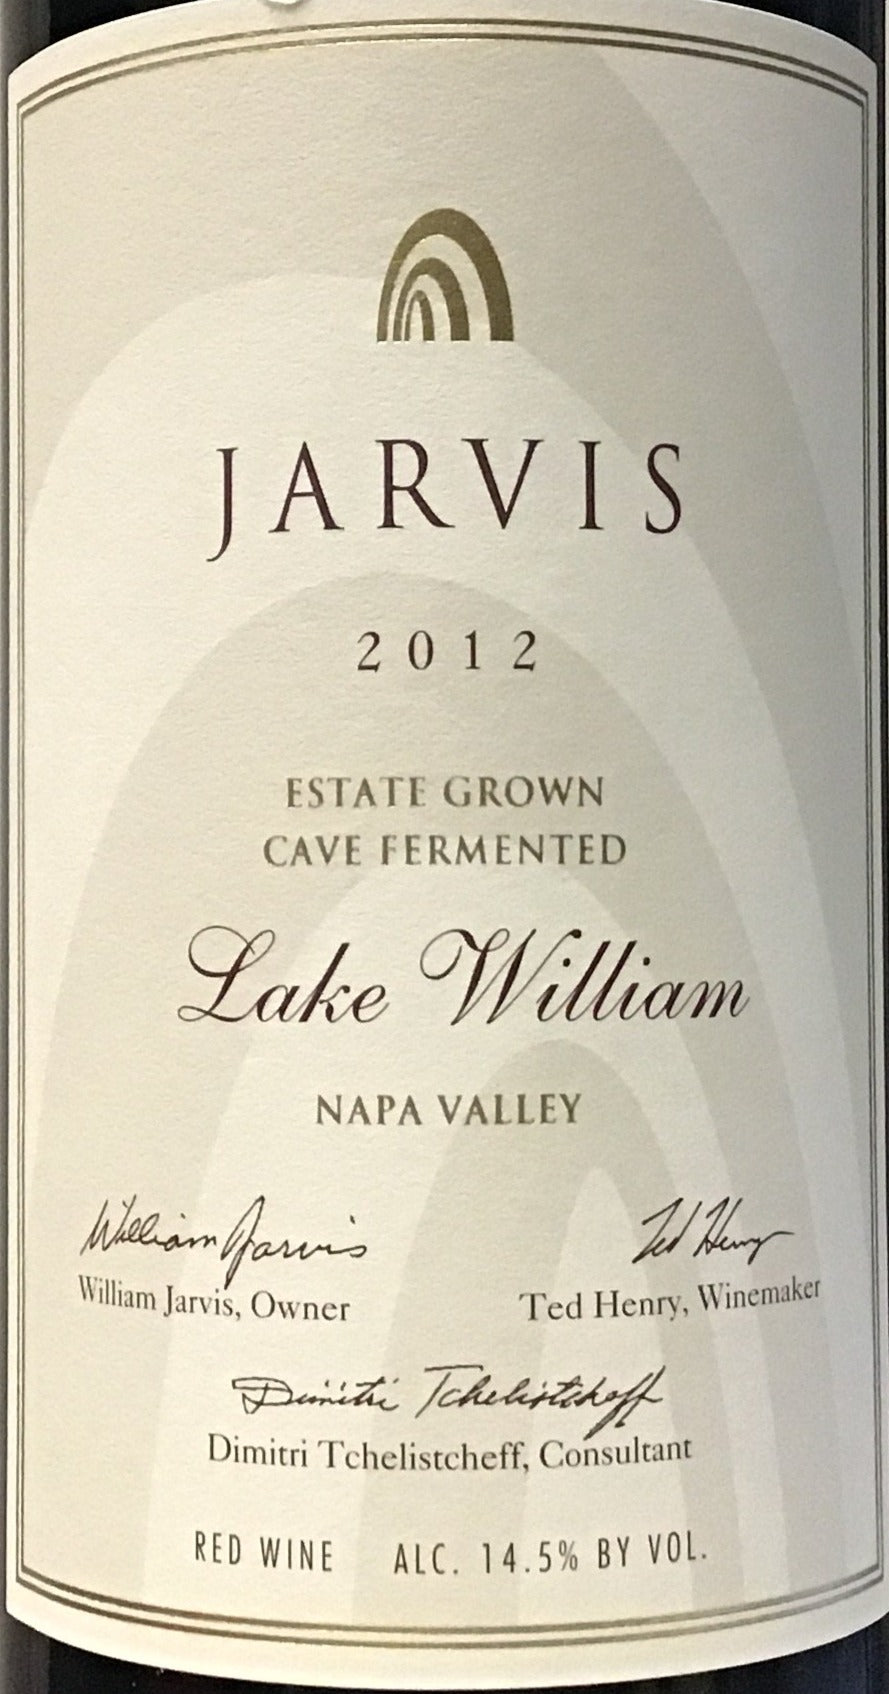 Jarvis "Lake William" - 2012